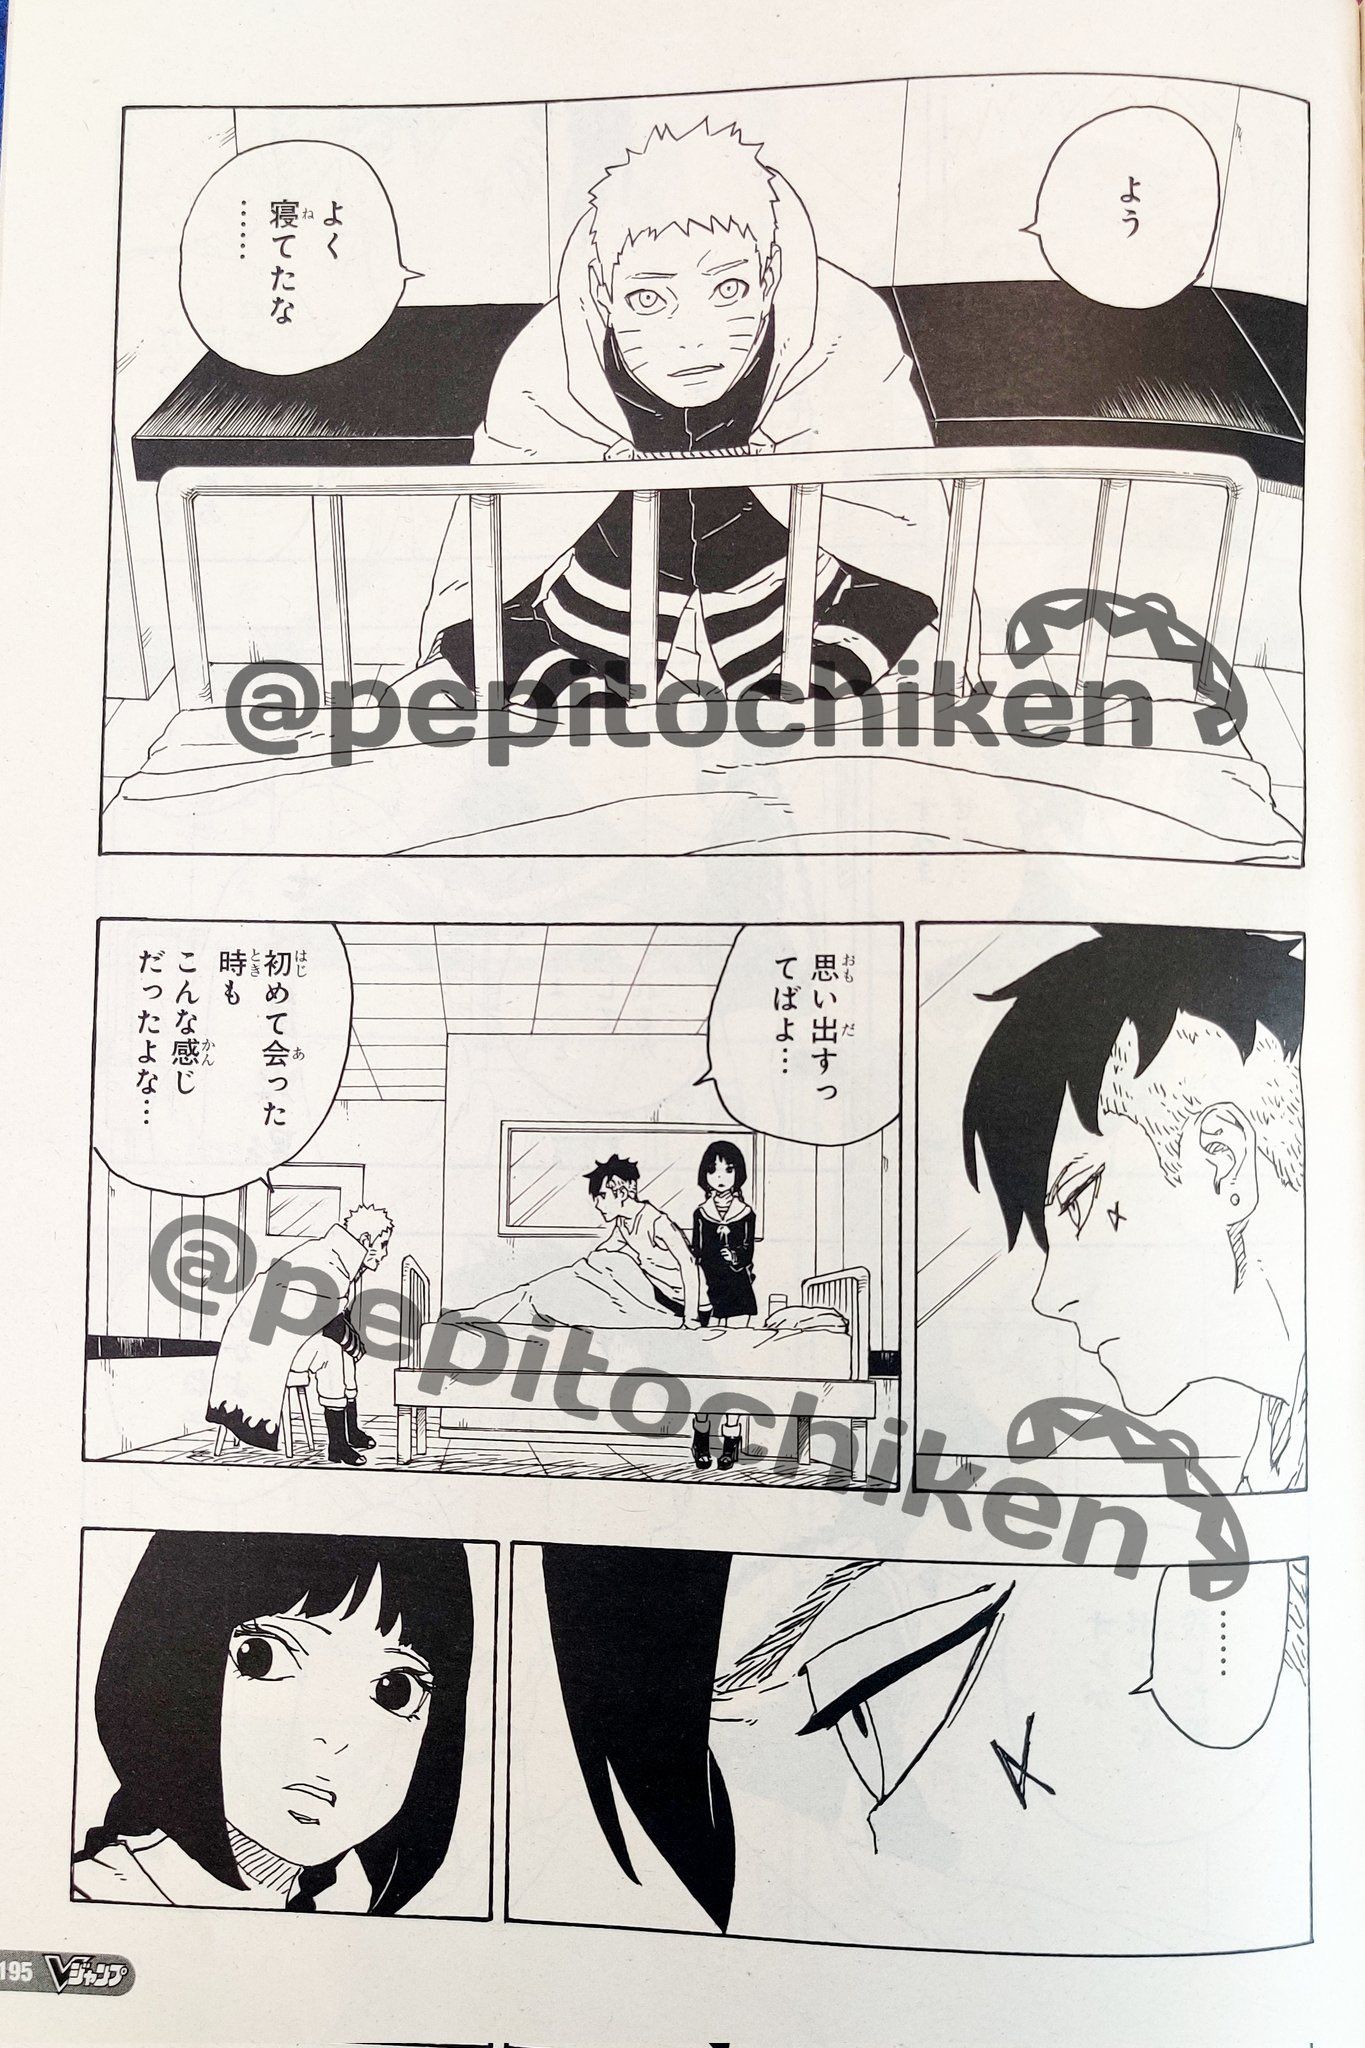 Kawaki tersadar dari kursi, dimana ia di rawat saat ini. Turut ada Naruto dan Sumire menemaninya hingga berbincang.